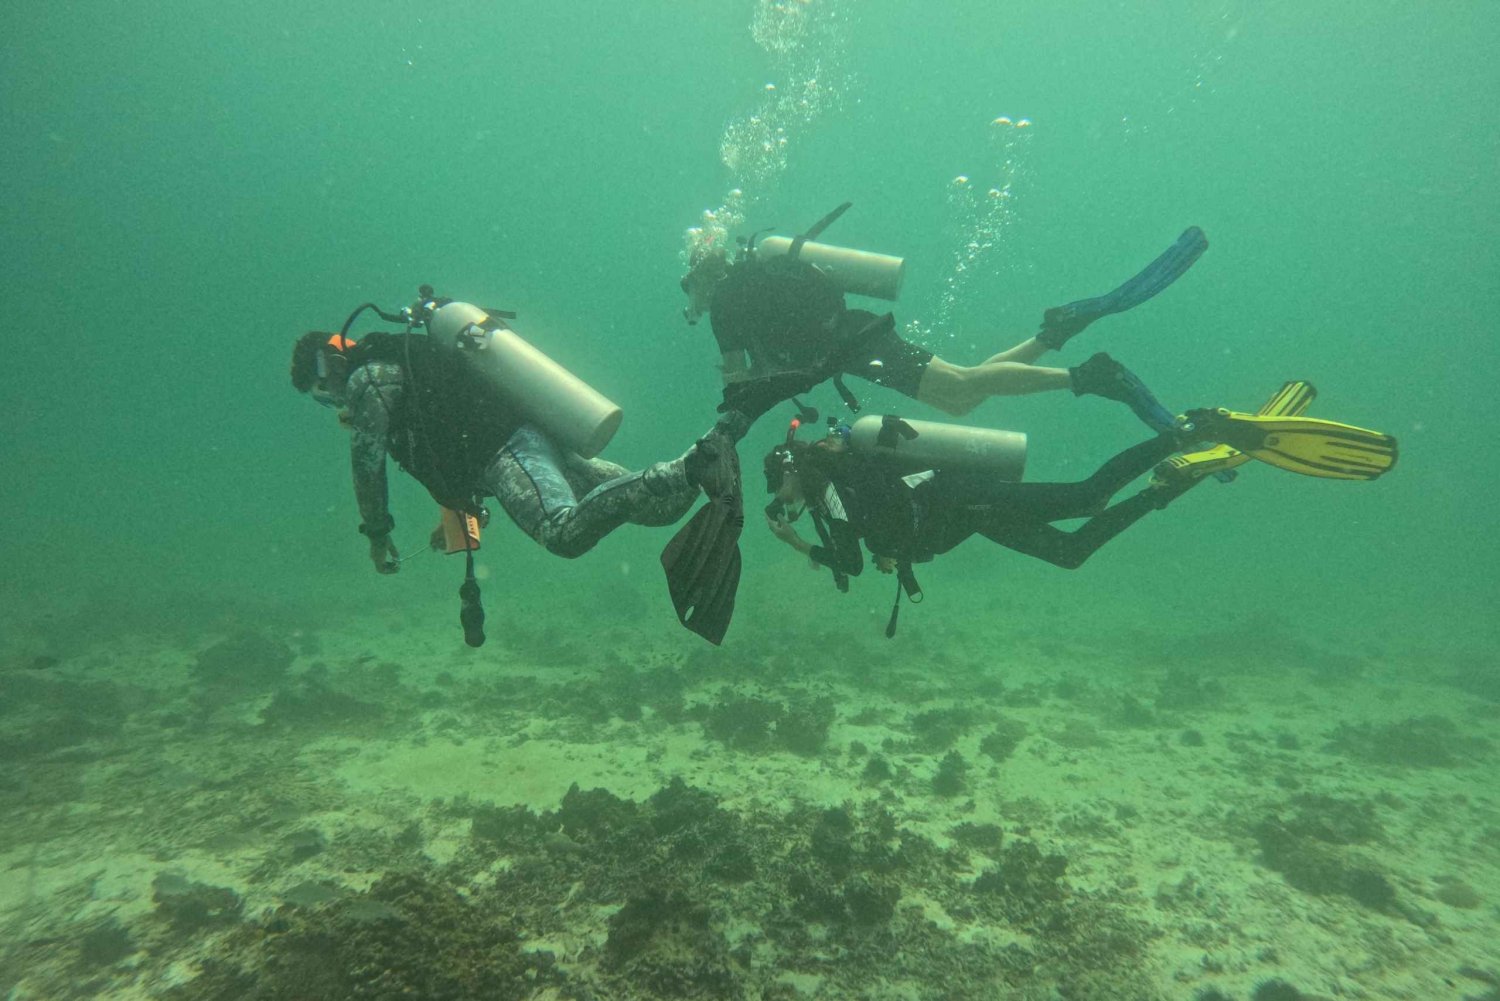 Mascate: Las islas Daymaniat prueban el submarinismo